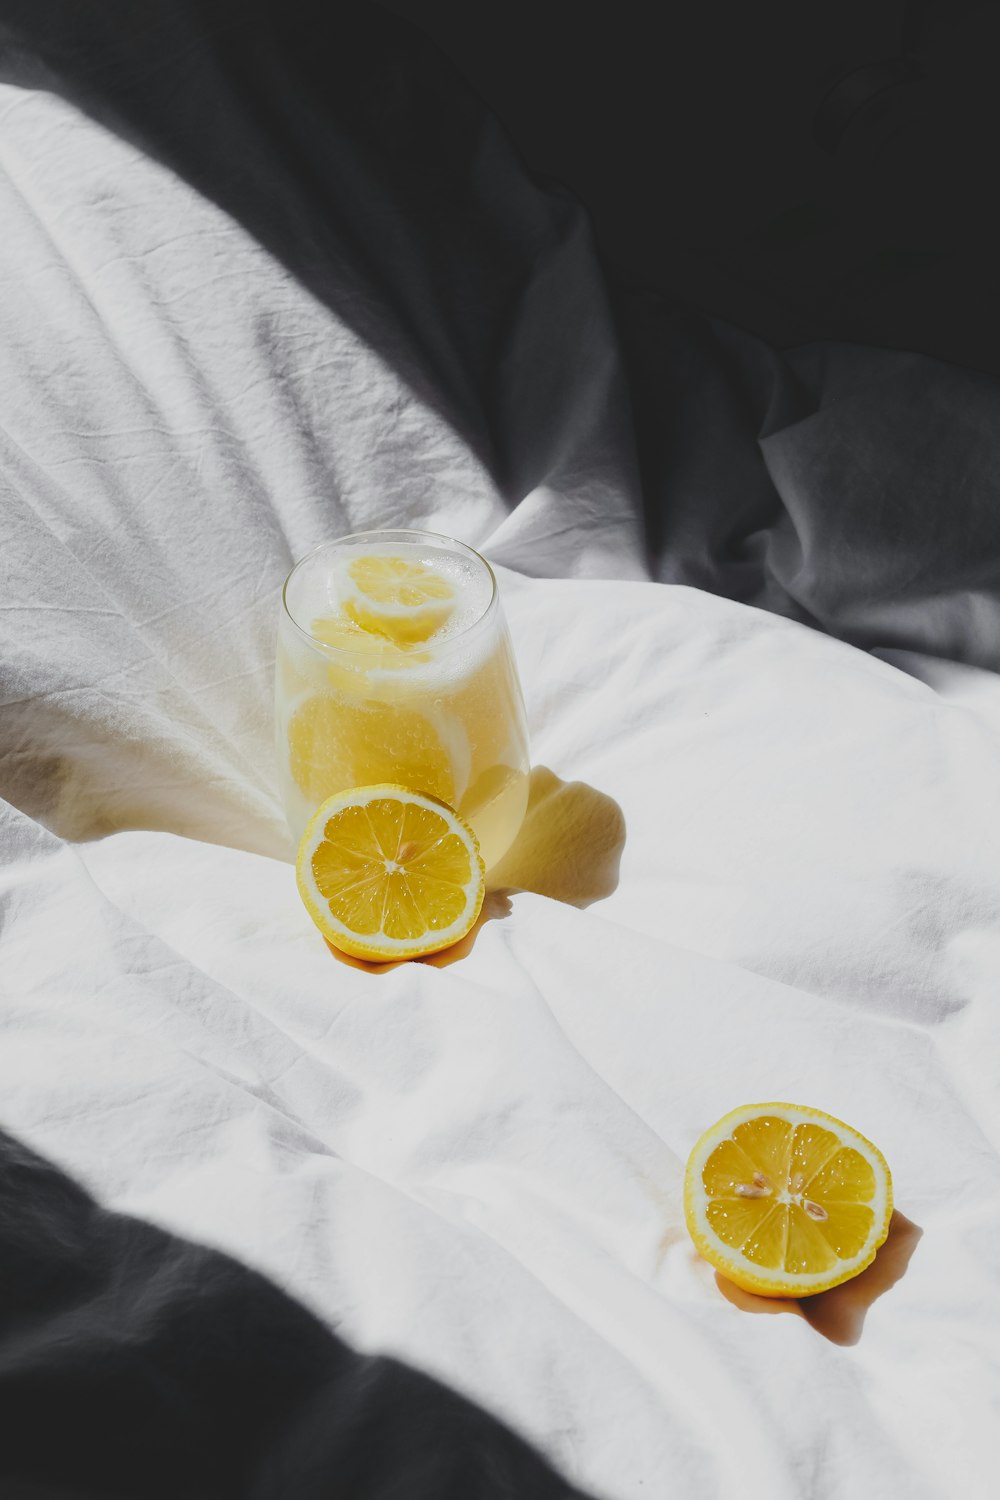 Un vaso de jugo de naranja sentado encima de una cama